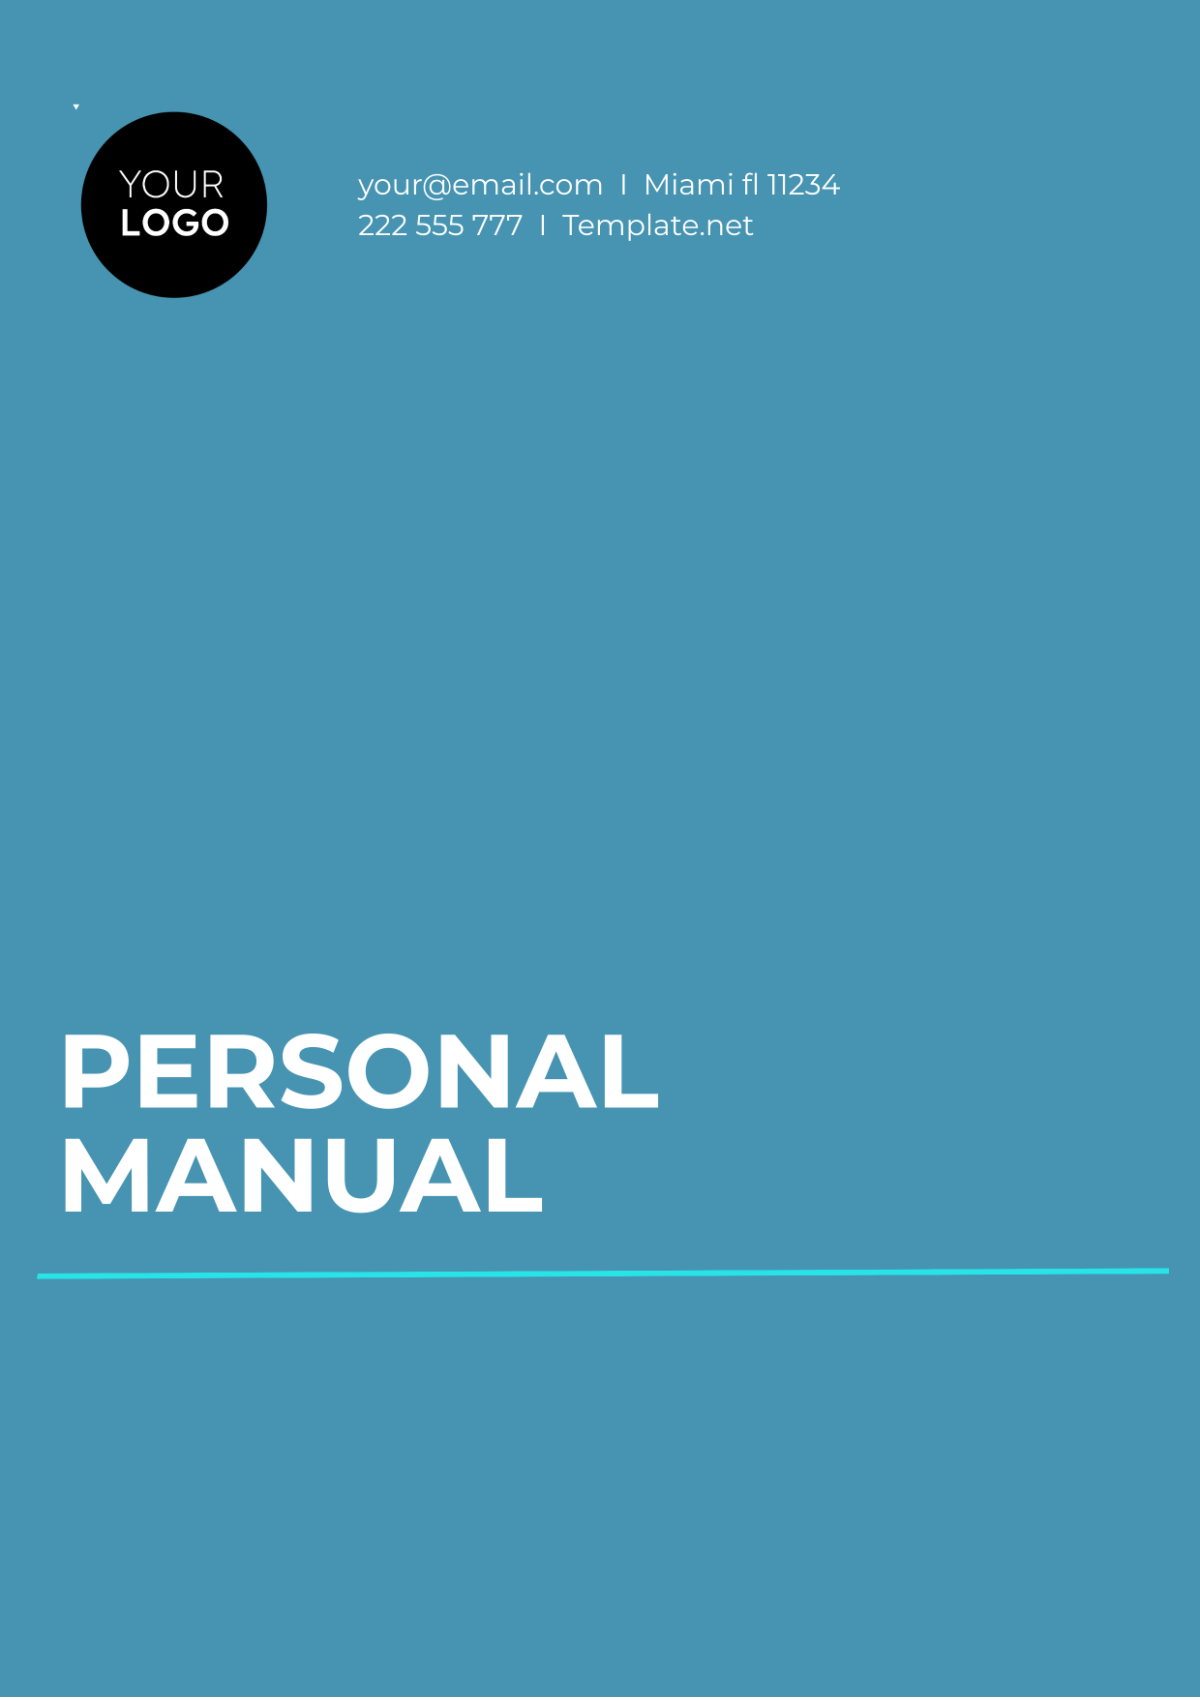 Personal Manual Template